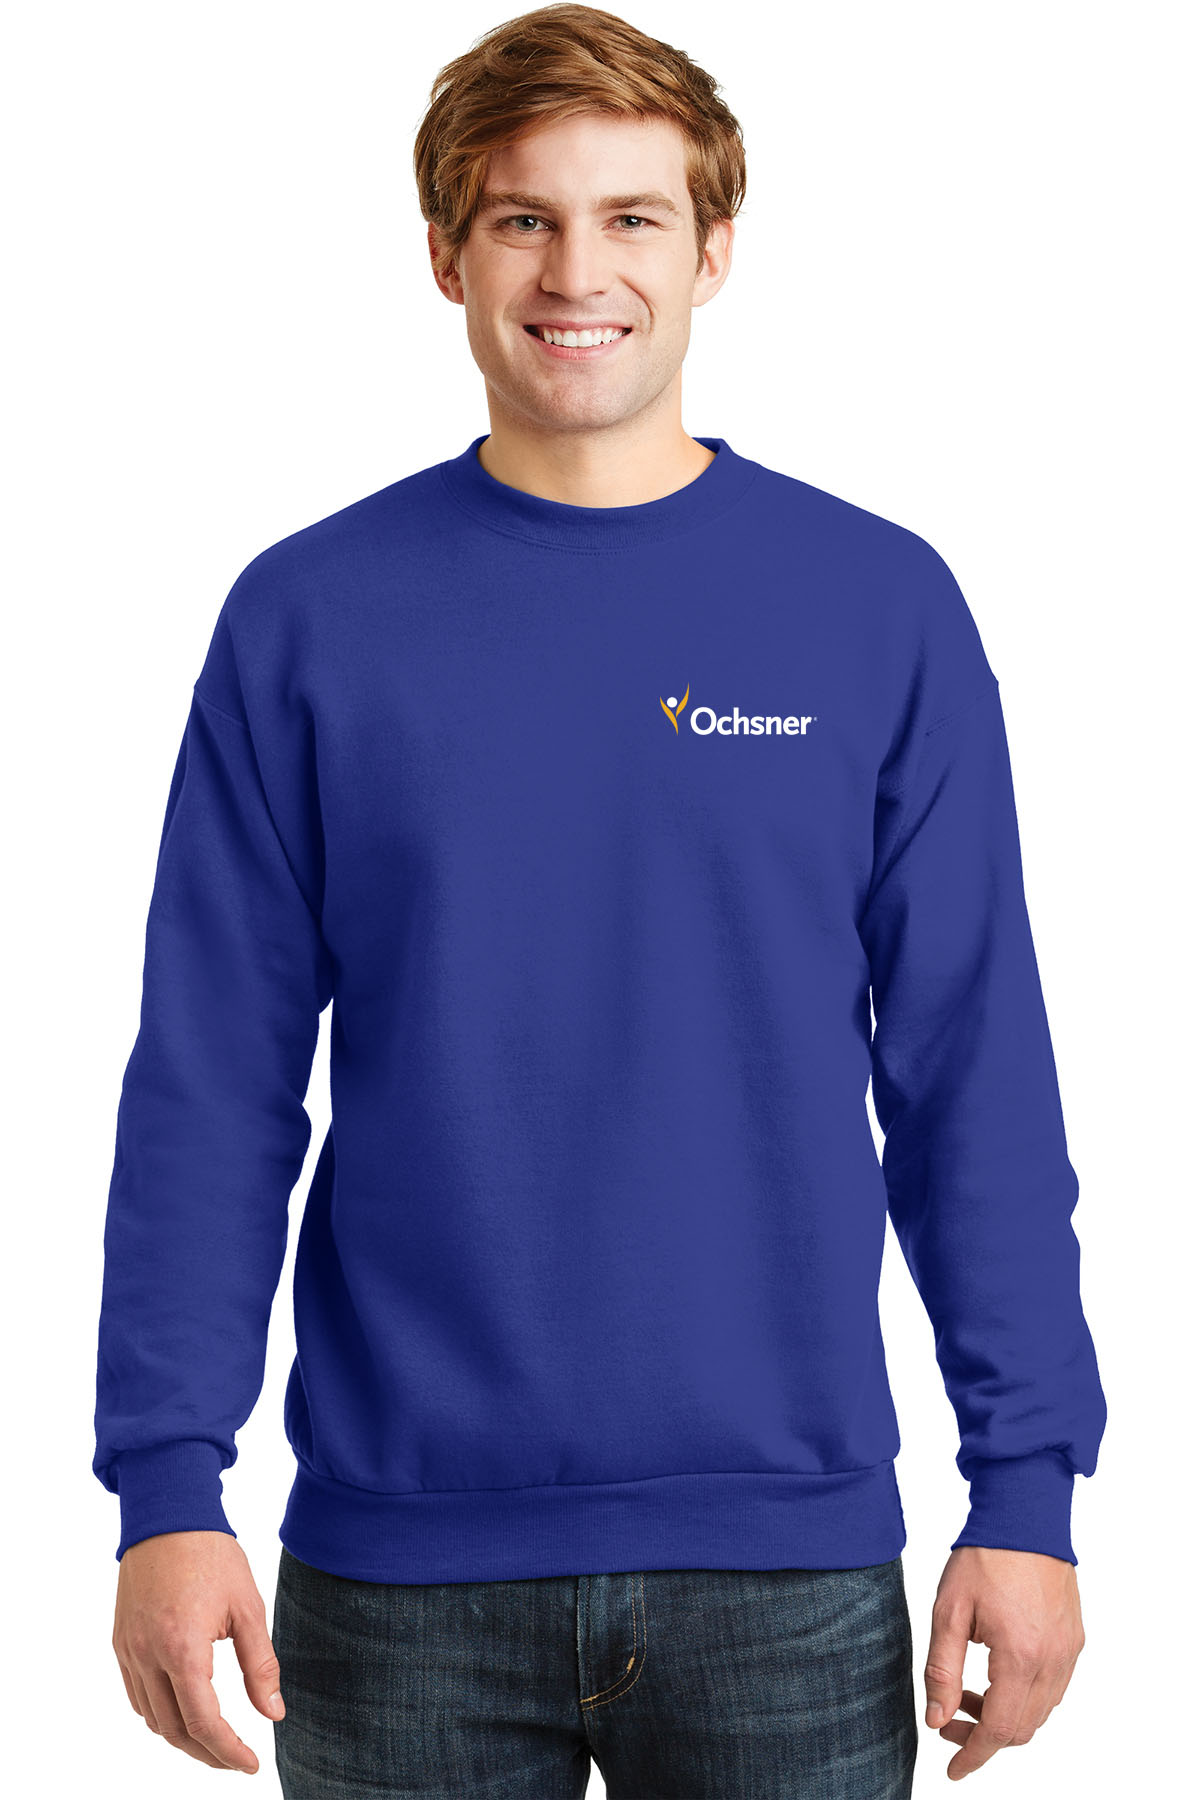 Hanes Unisex Ecosmart Sweatshirt, Royal Blue, large image number 1